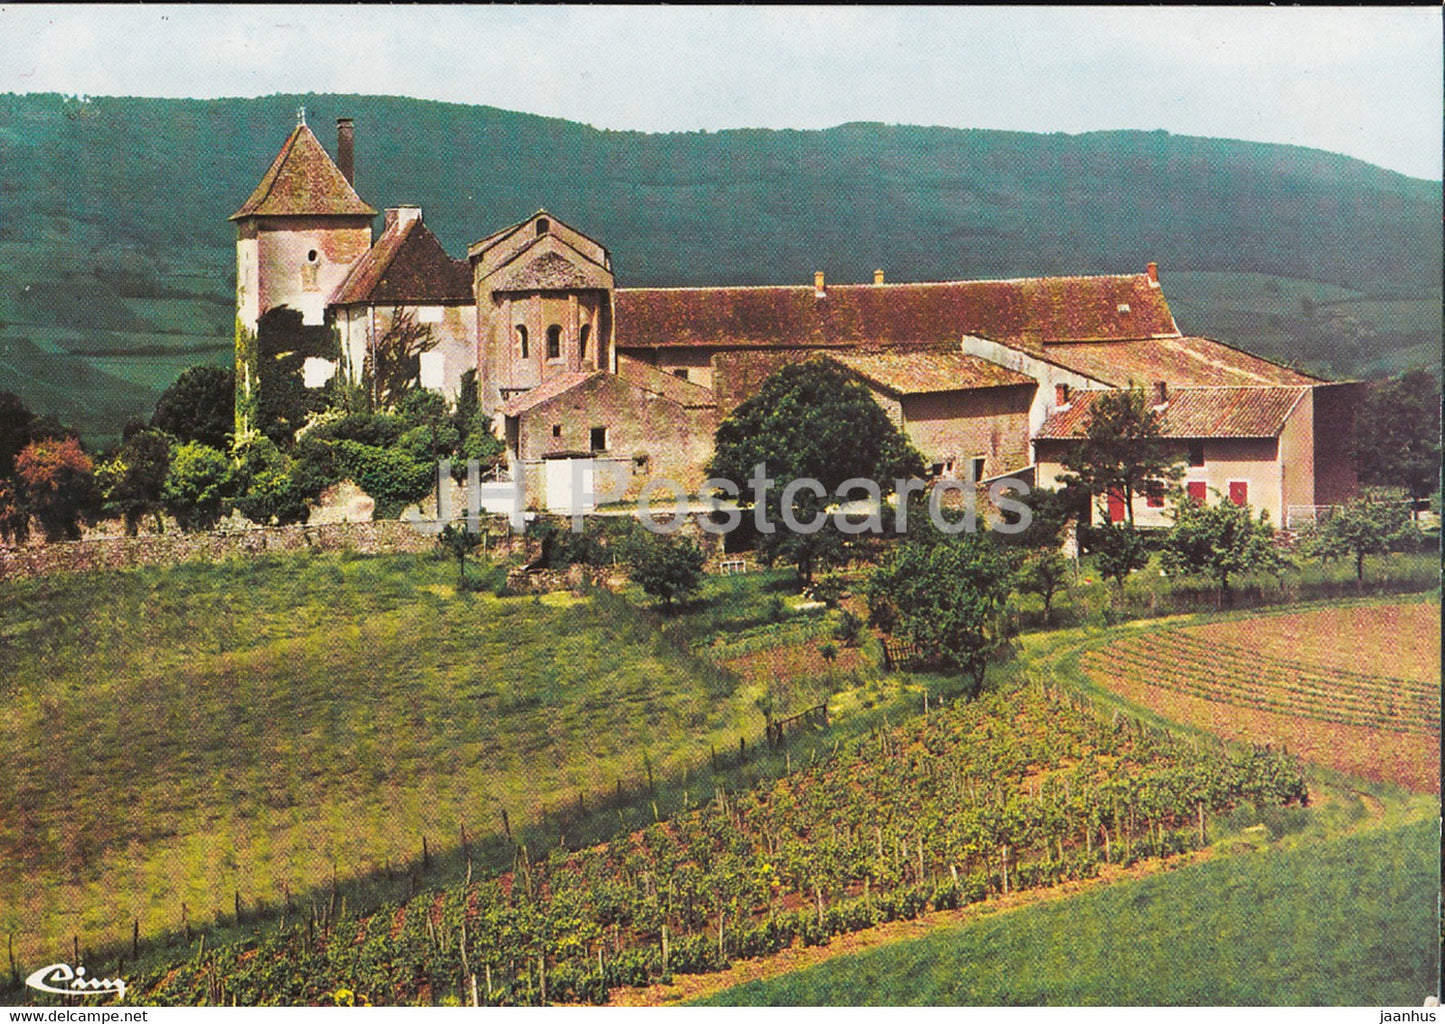 Berze la Ville - Le Chateau des Moines et la chapelle romane - castle - France - unused - JH Postcards